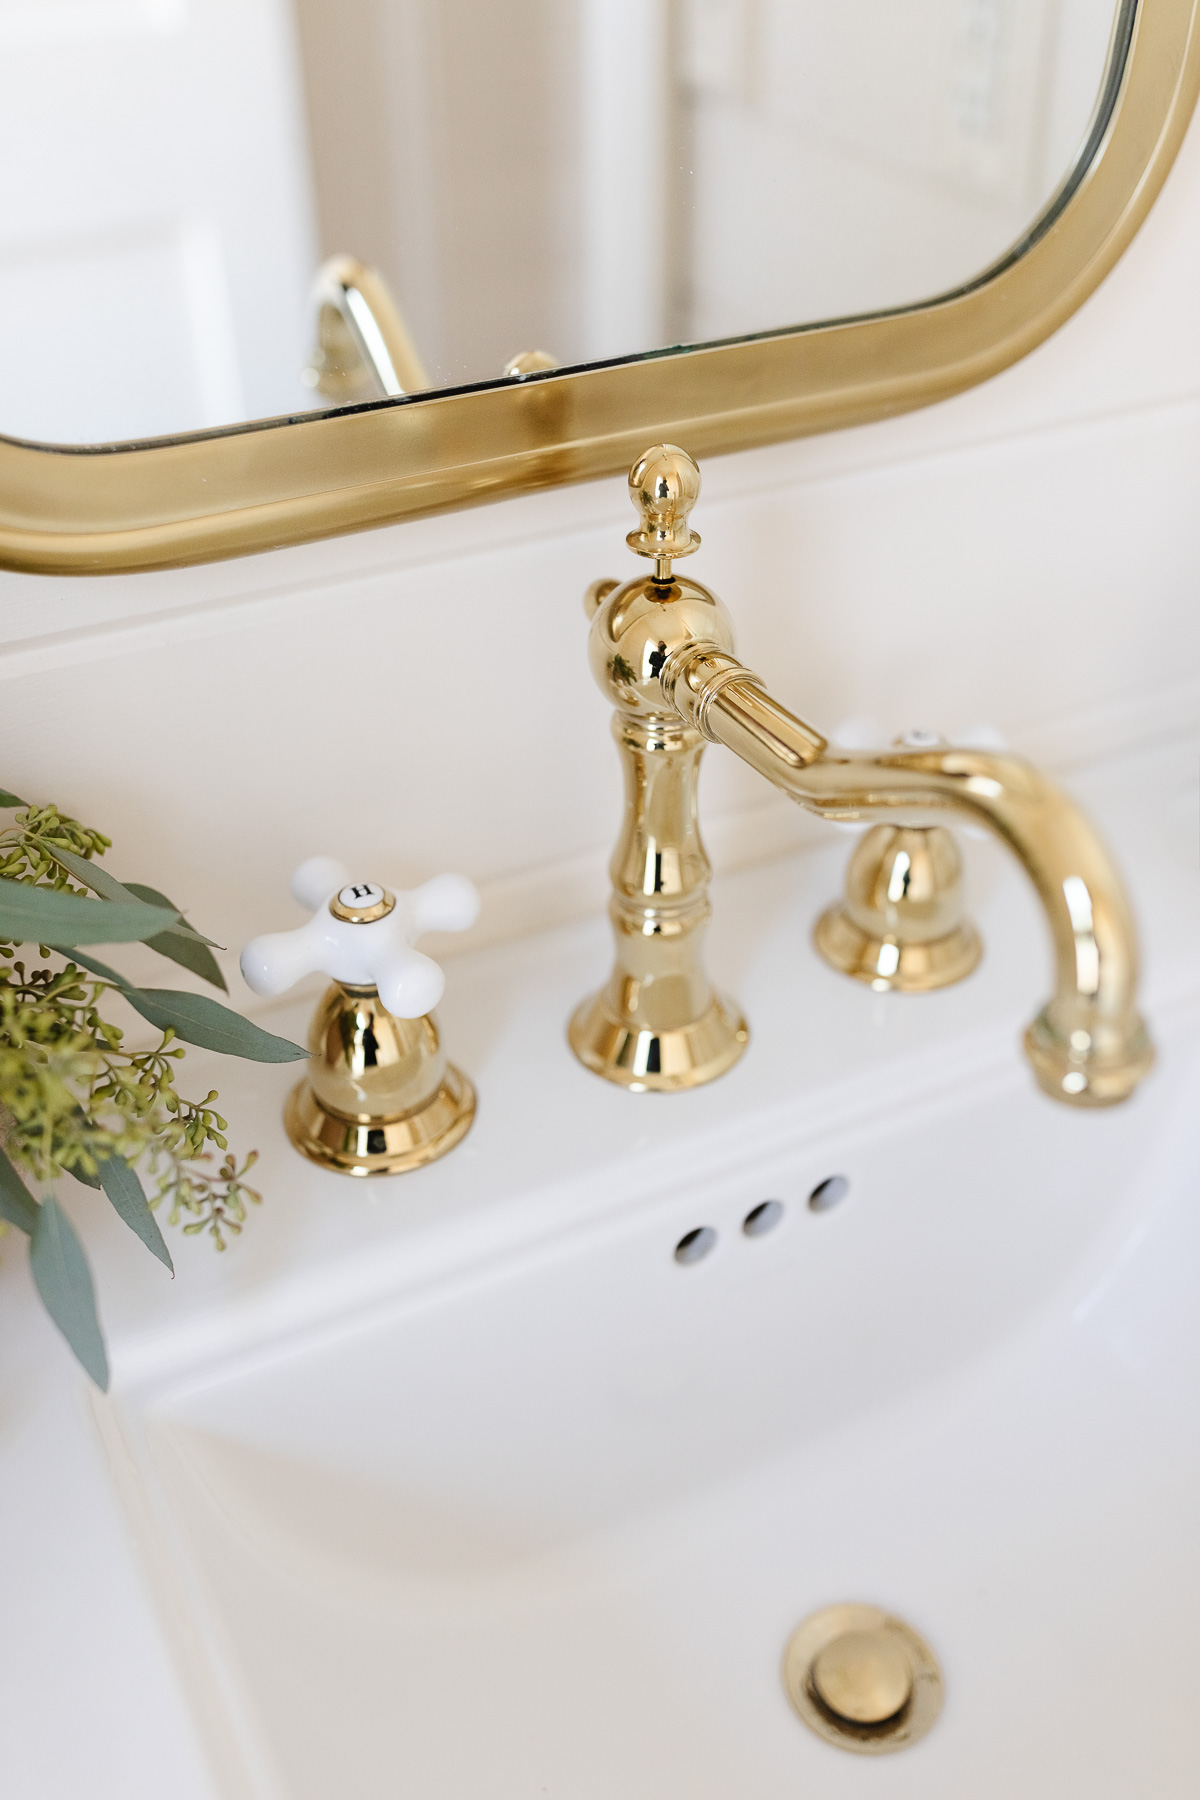 widespread brass faucet